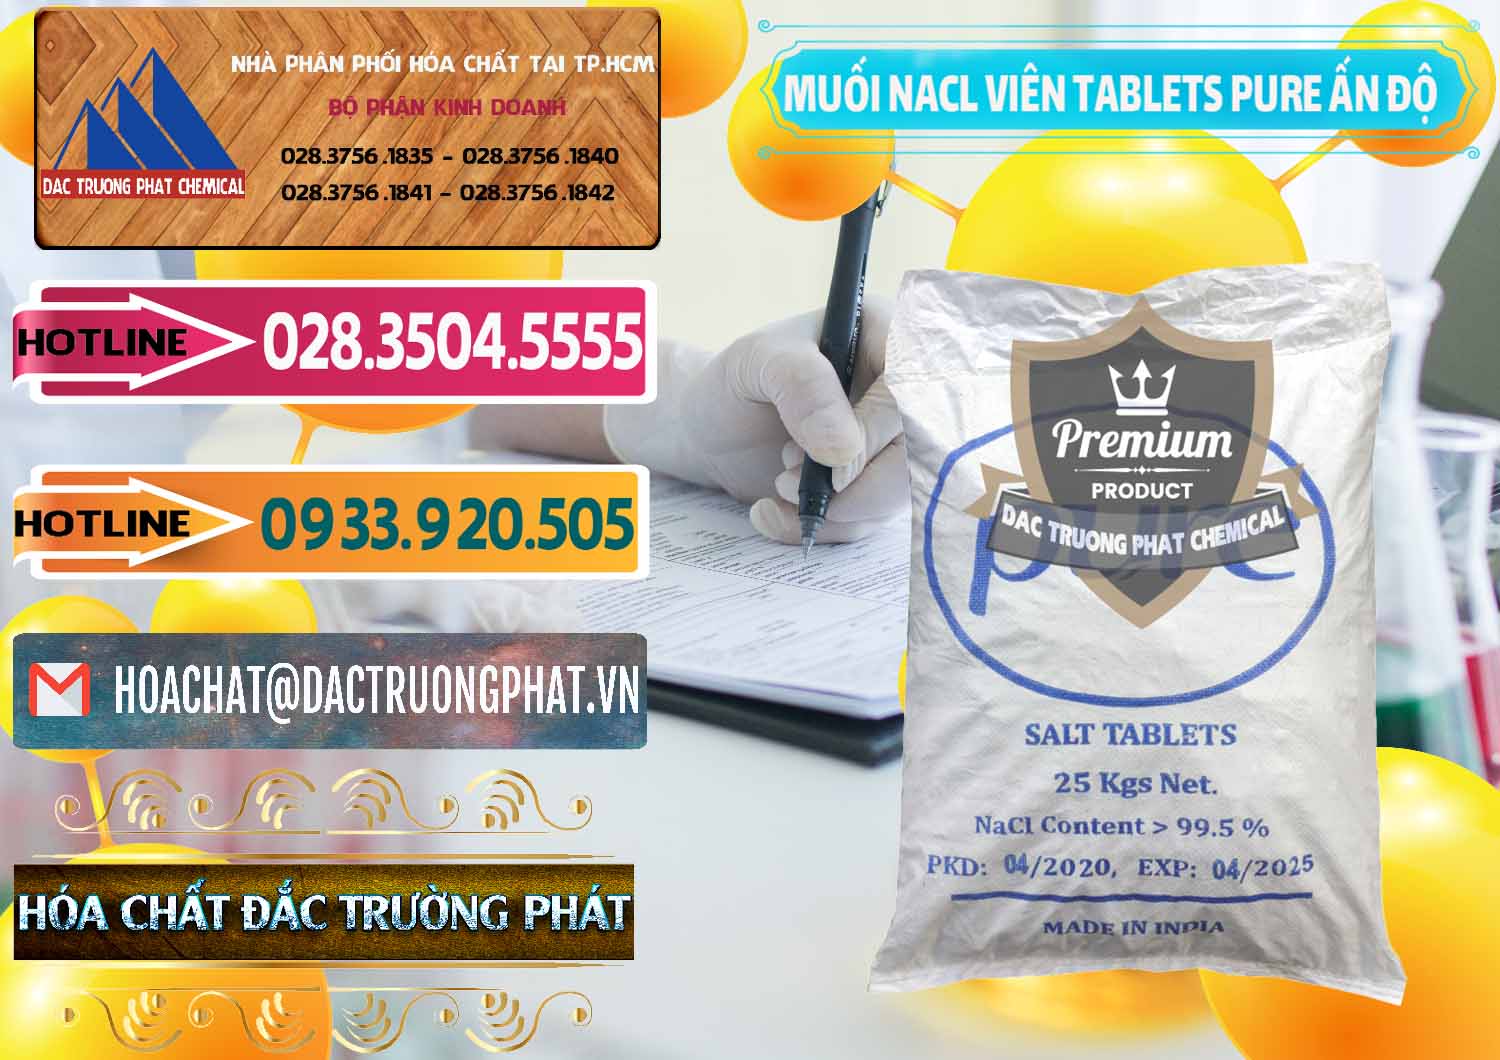 Nơi nhập khẩu ( bán ) Muối NaCL – Sodium Chloride Dạng Viên Tablets Pure Ấn Độ India - 0294 - Công ty chuyên kinh doanh ( phân phối ) hóa chất tại TP.HCM - dactruongphat.vn